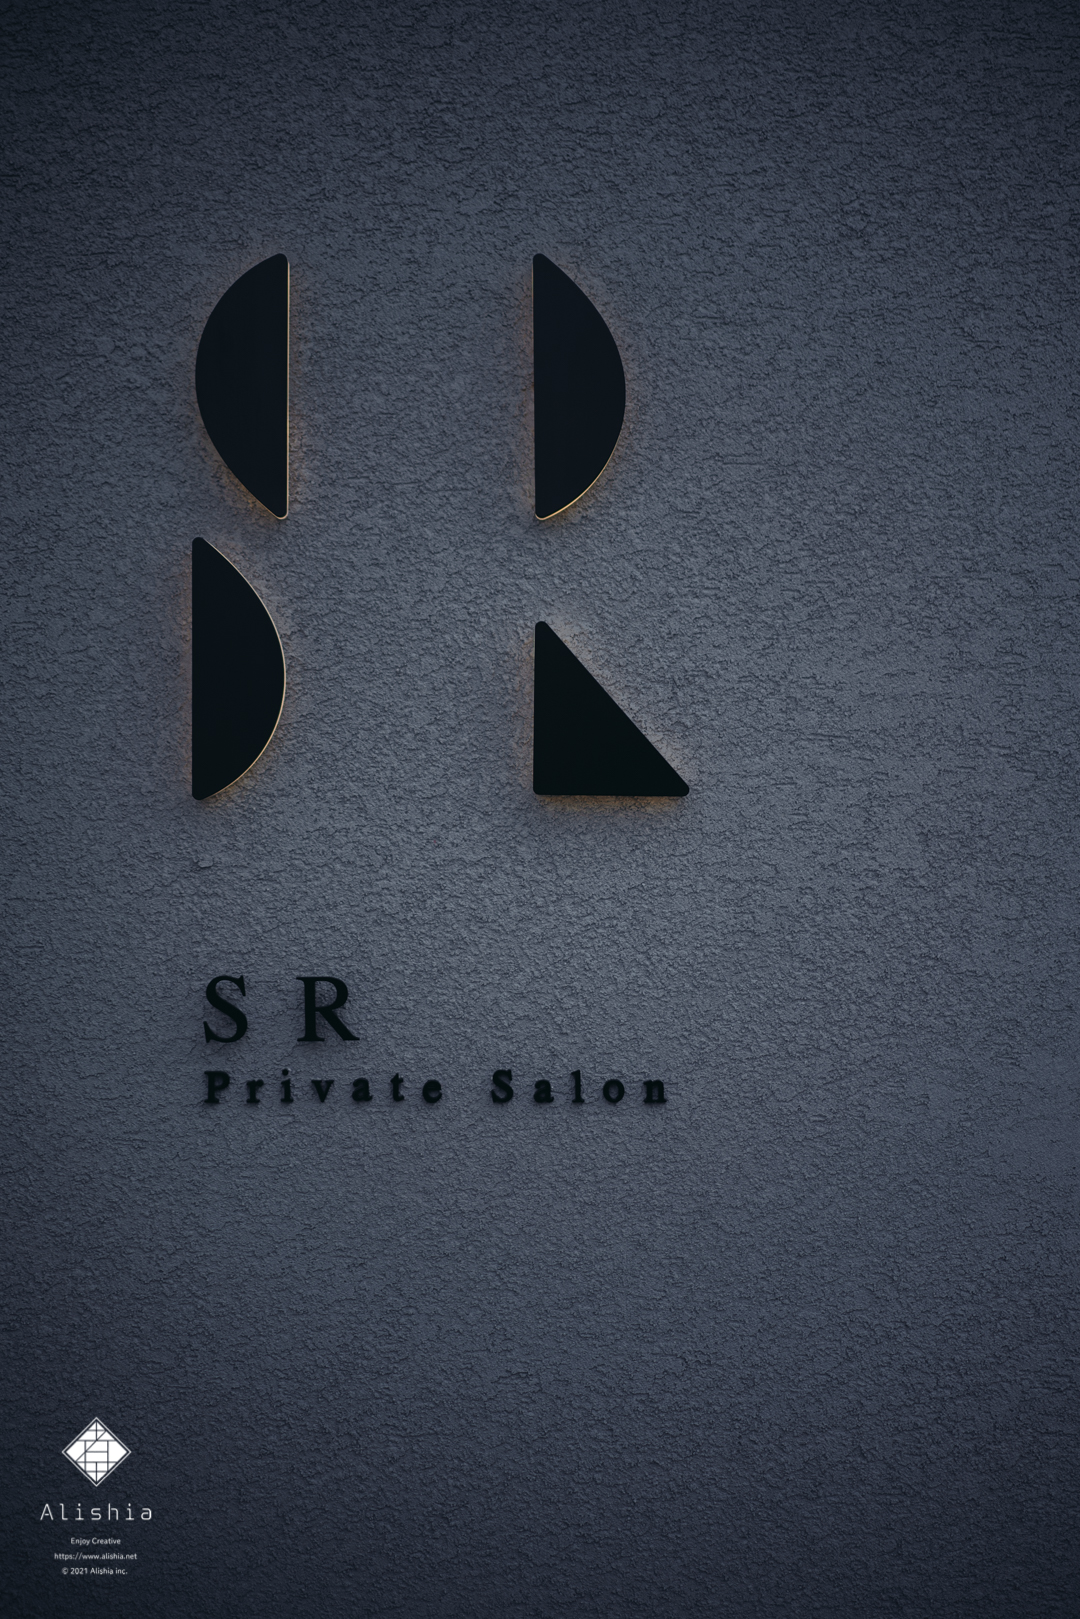 SR Private Salon